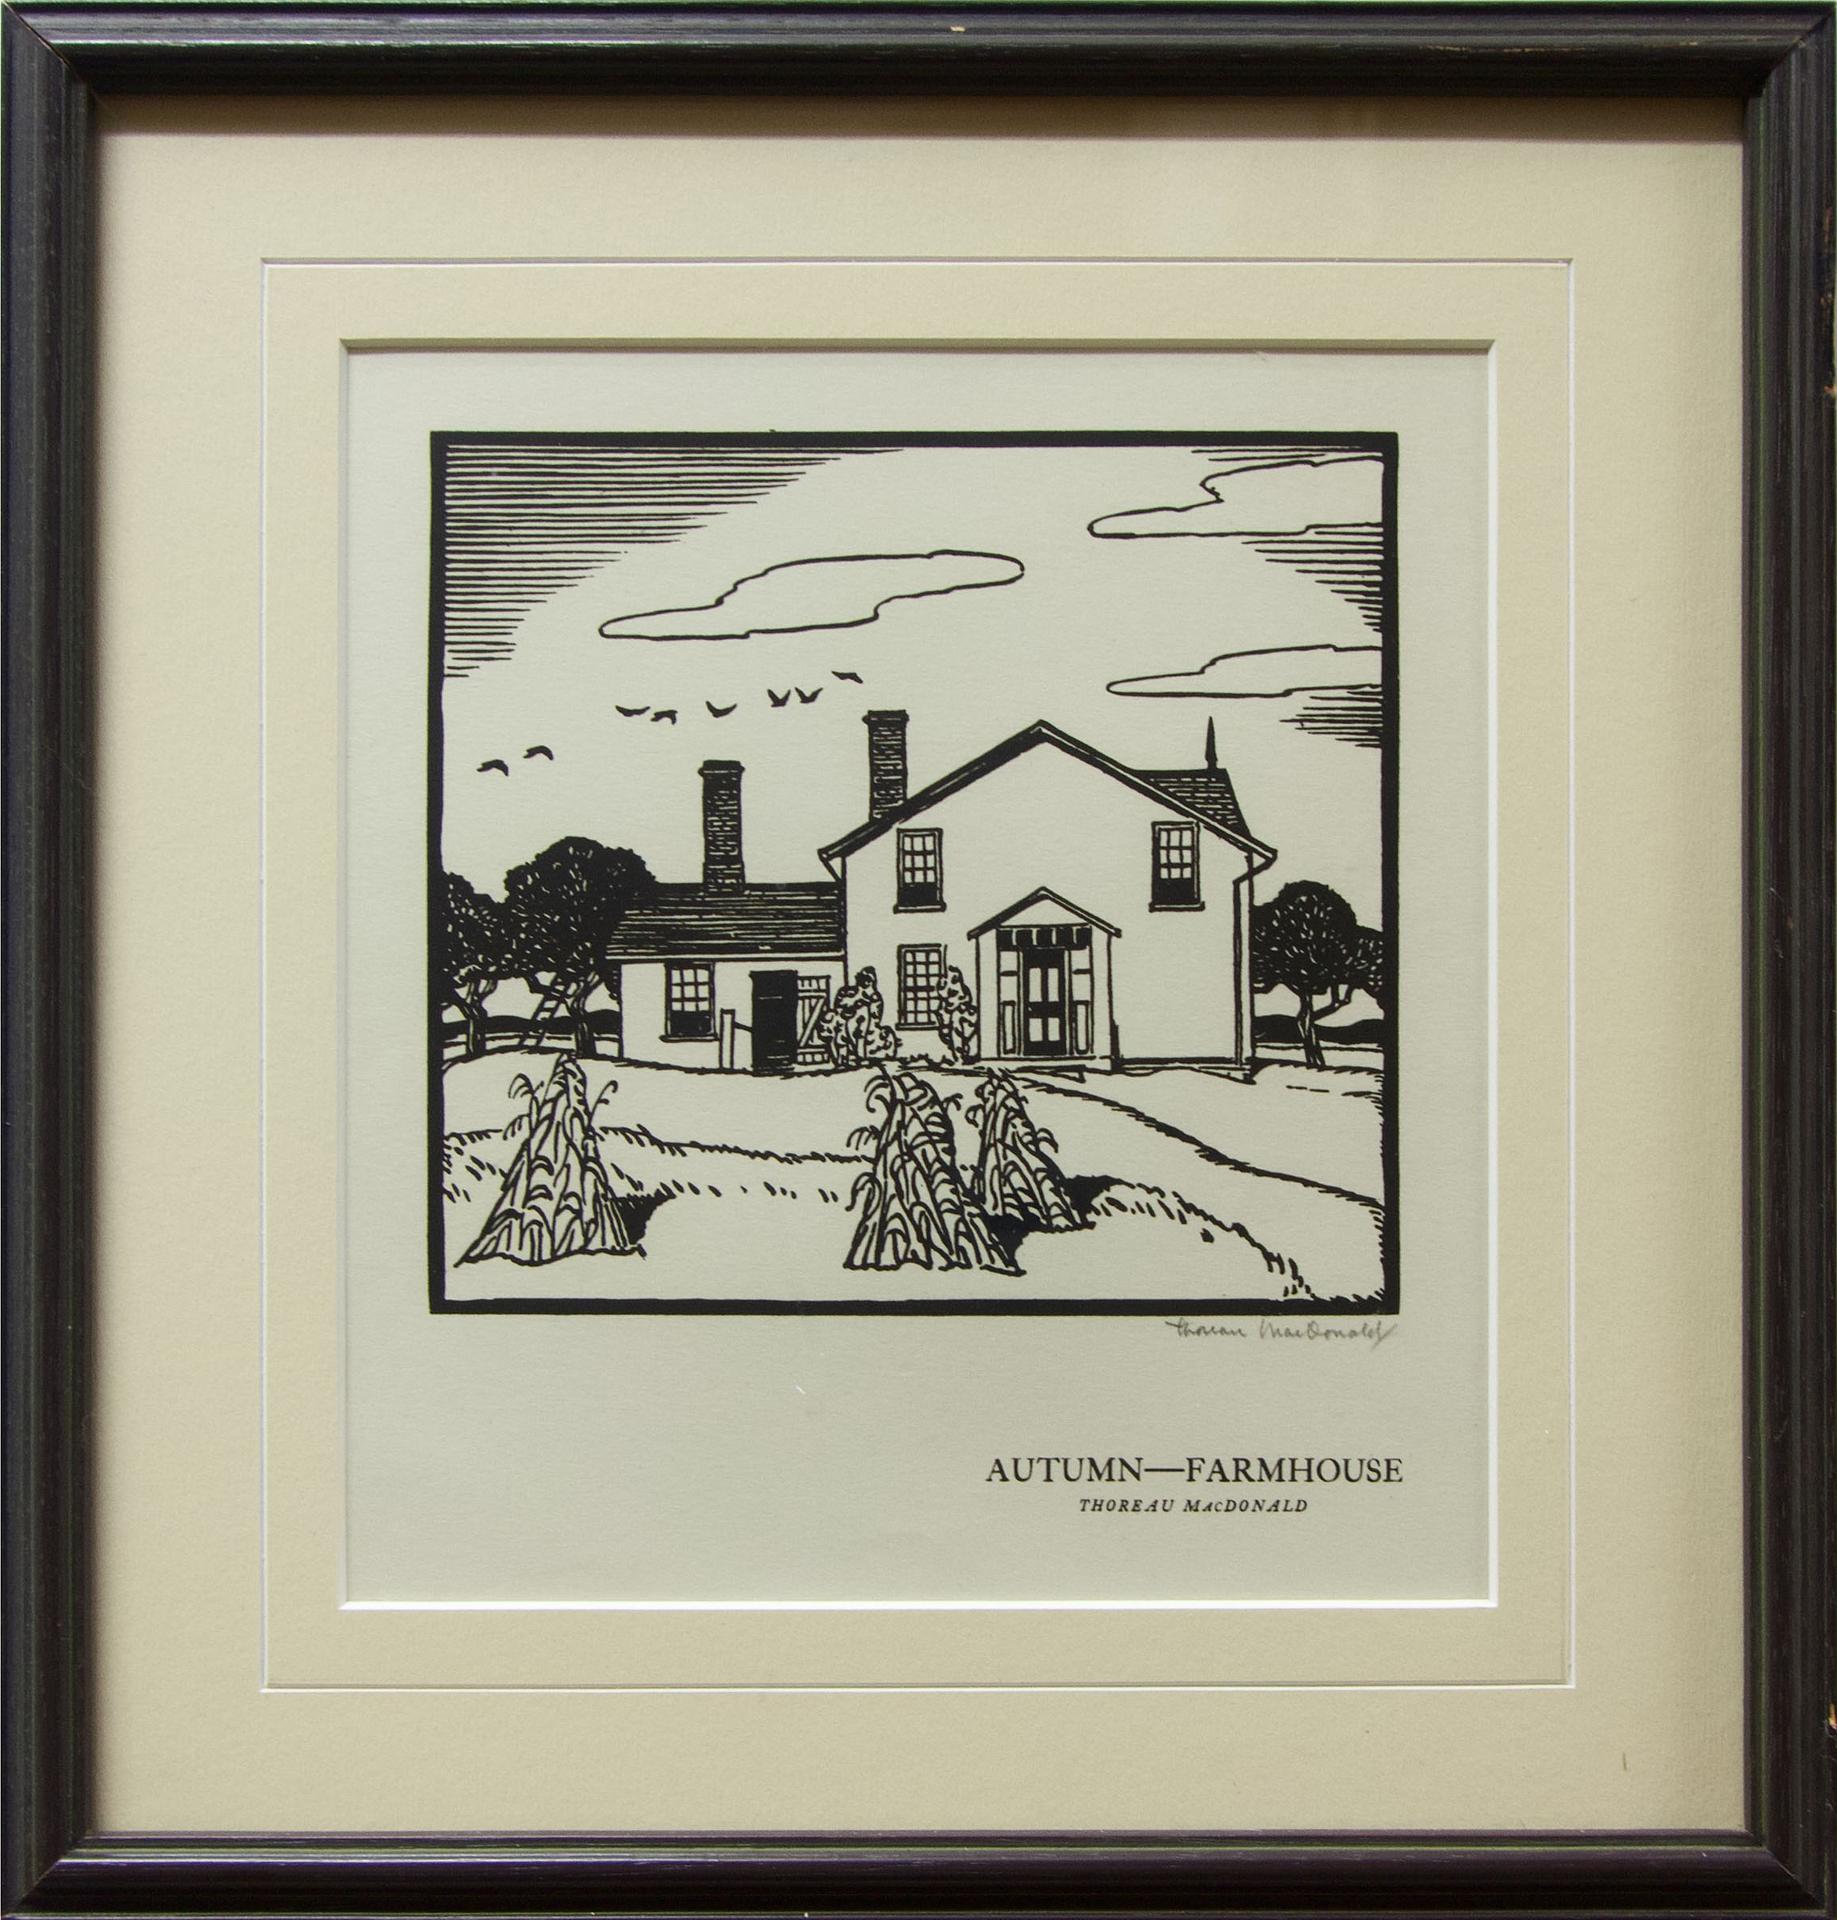 Thoreau MacDonald (1901-1989) - Autumn - Farmhouse